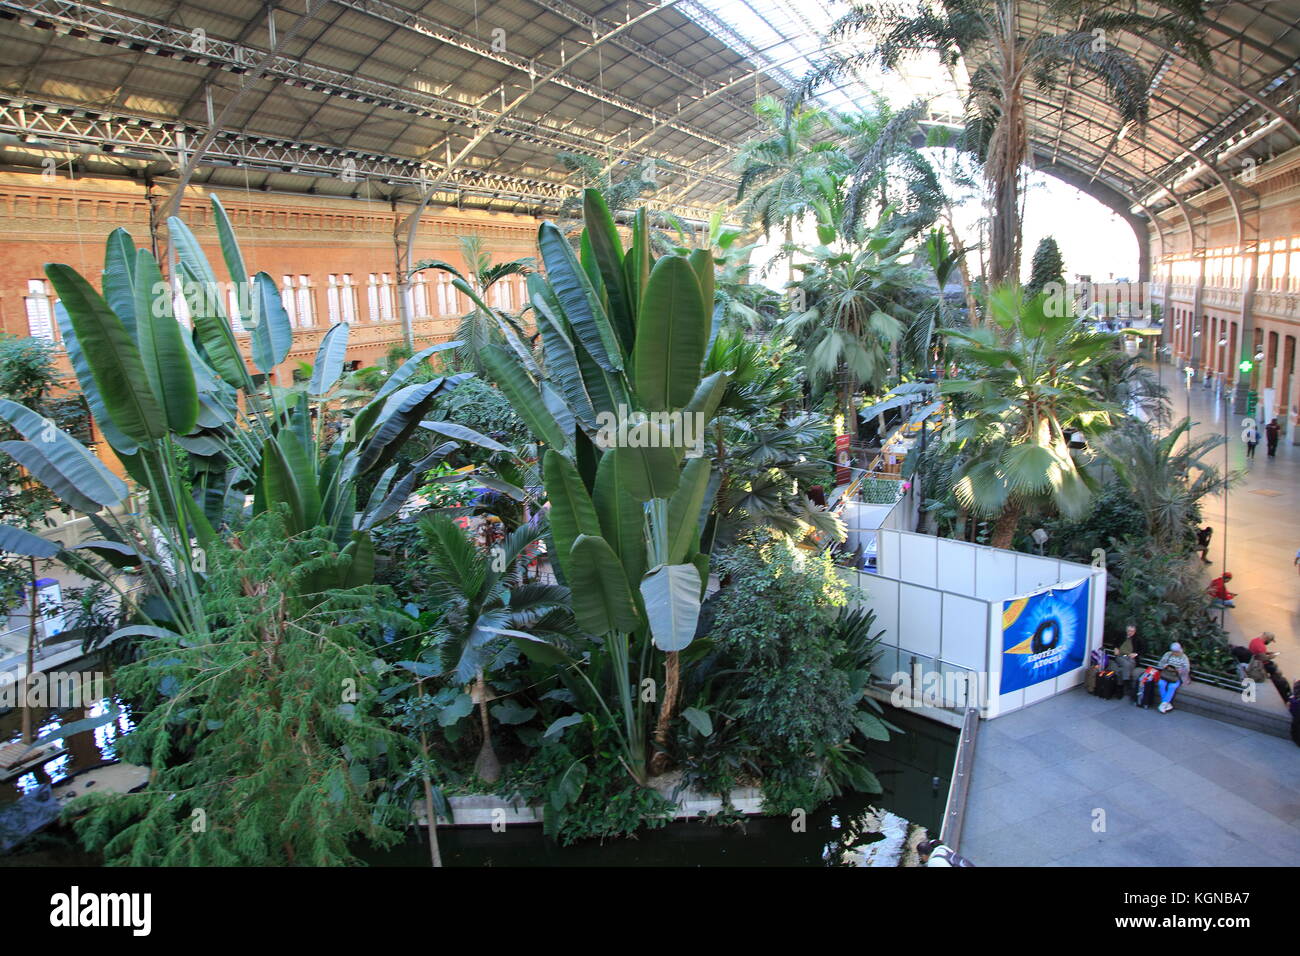 Las plantas que crecen en la selva tropical jardín interior de la estación de Atocha, Madrid, España Foto de stock